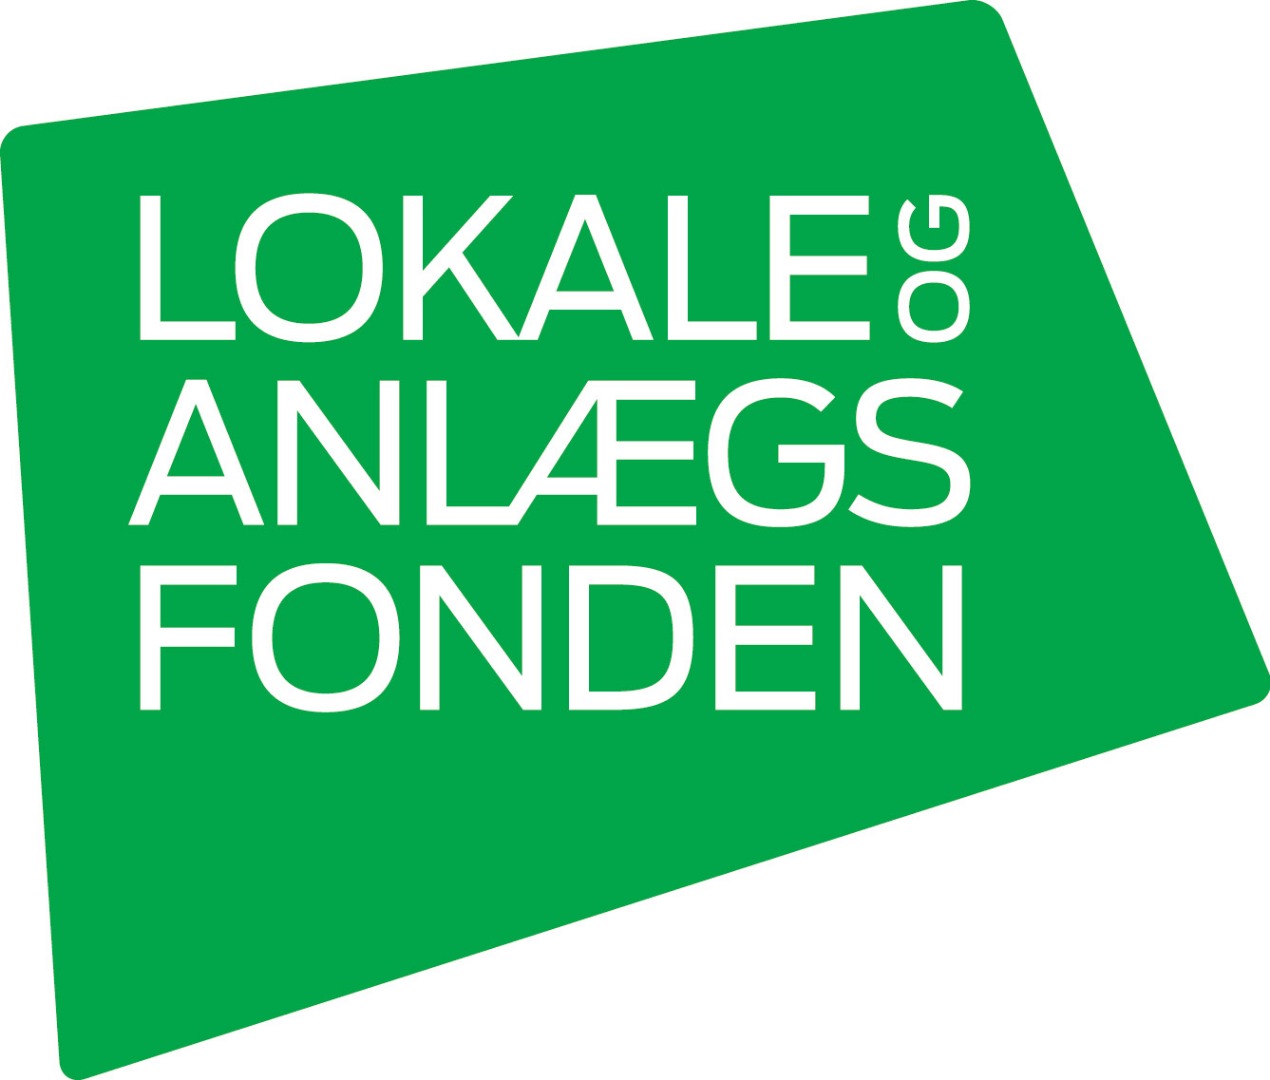 loa-logo-groen-300dpi-jpeg